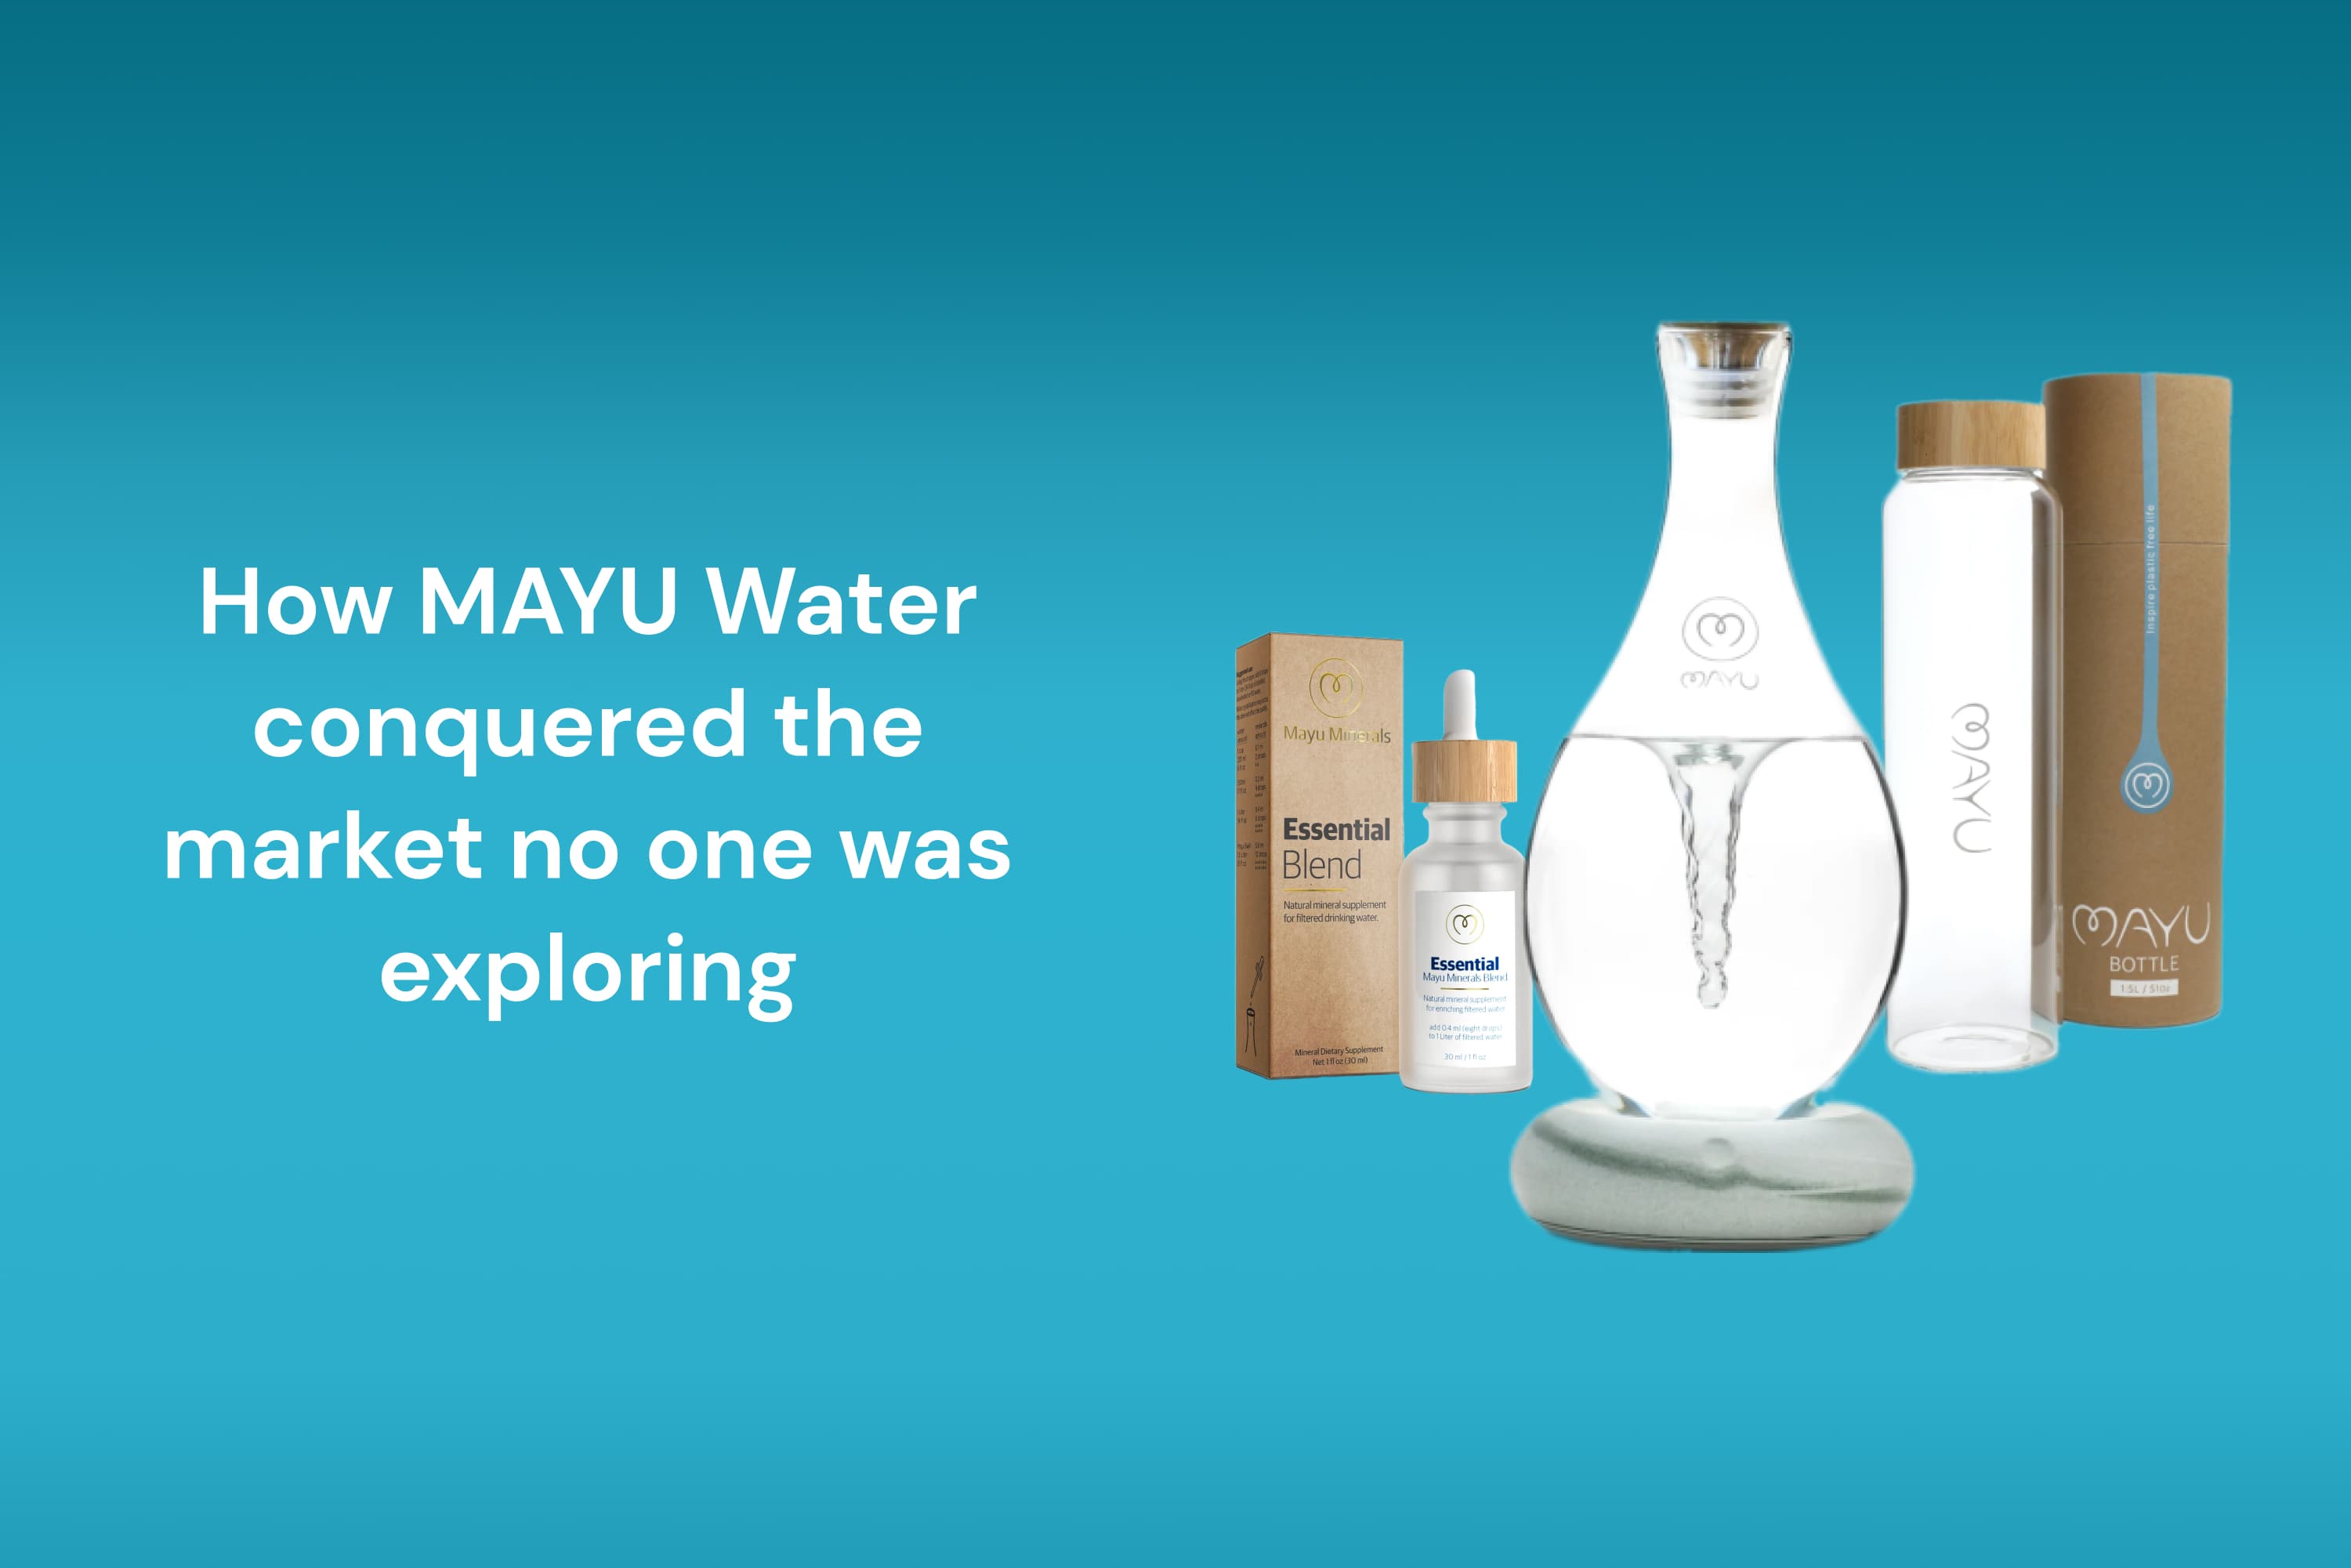 Mayu Water